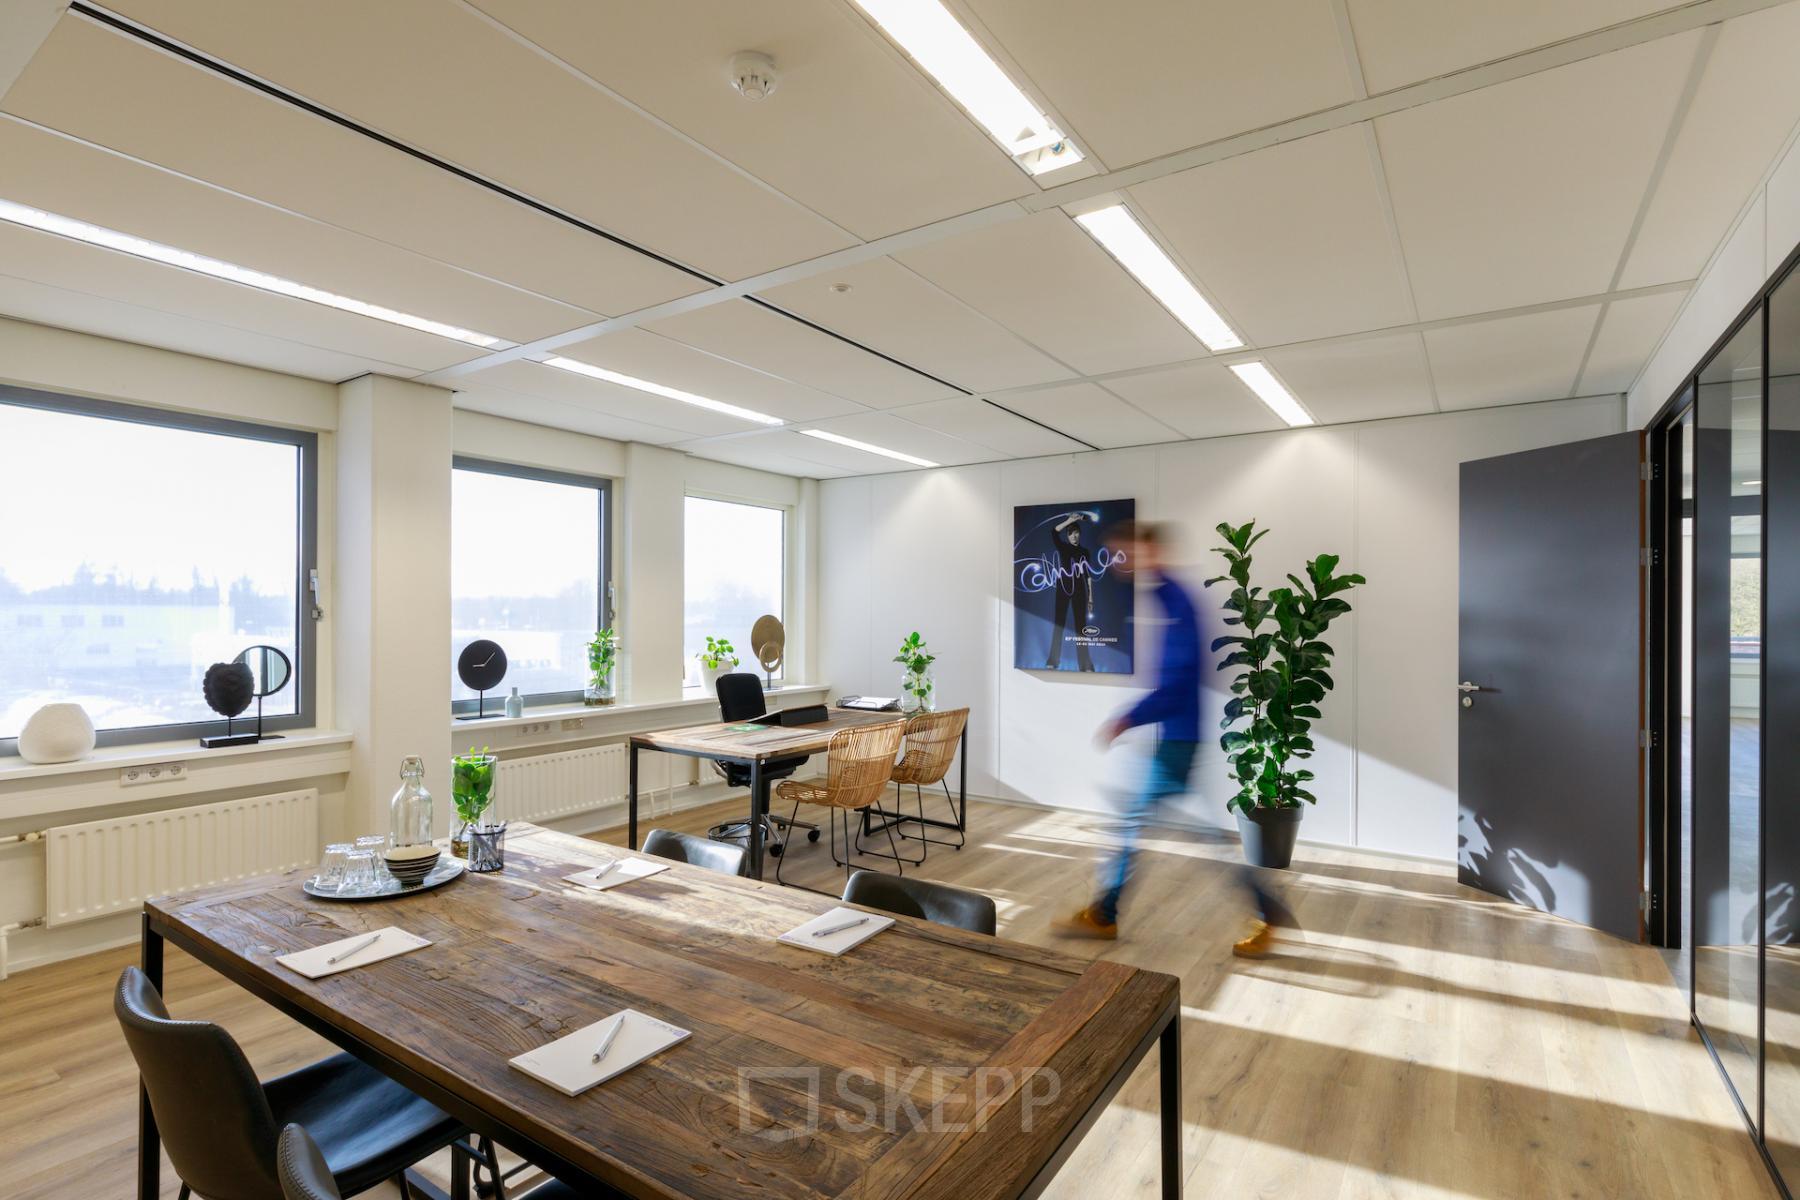 Rent office space Baarnsche dijk 4, Baarn (3)